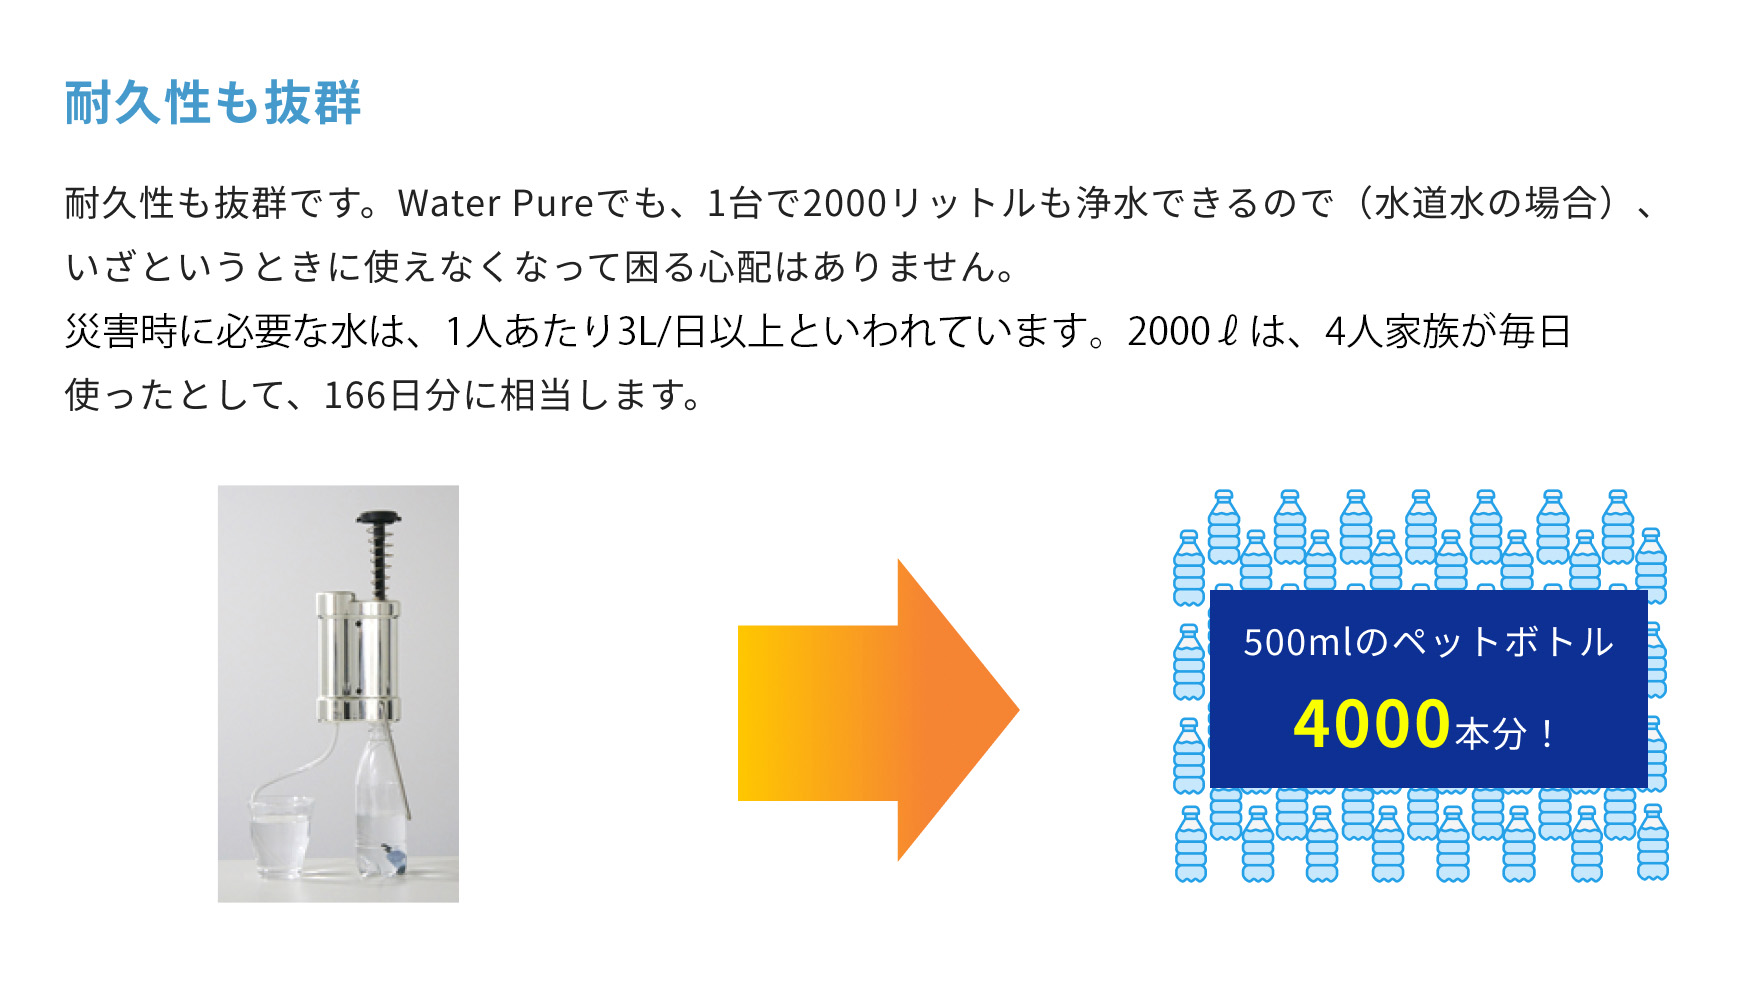 Water Pure耐久性